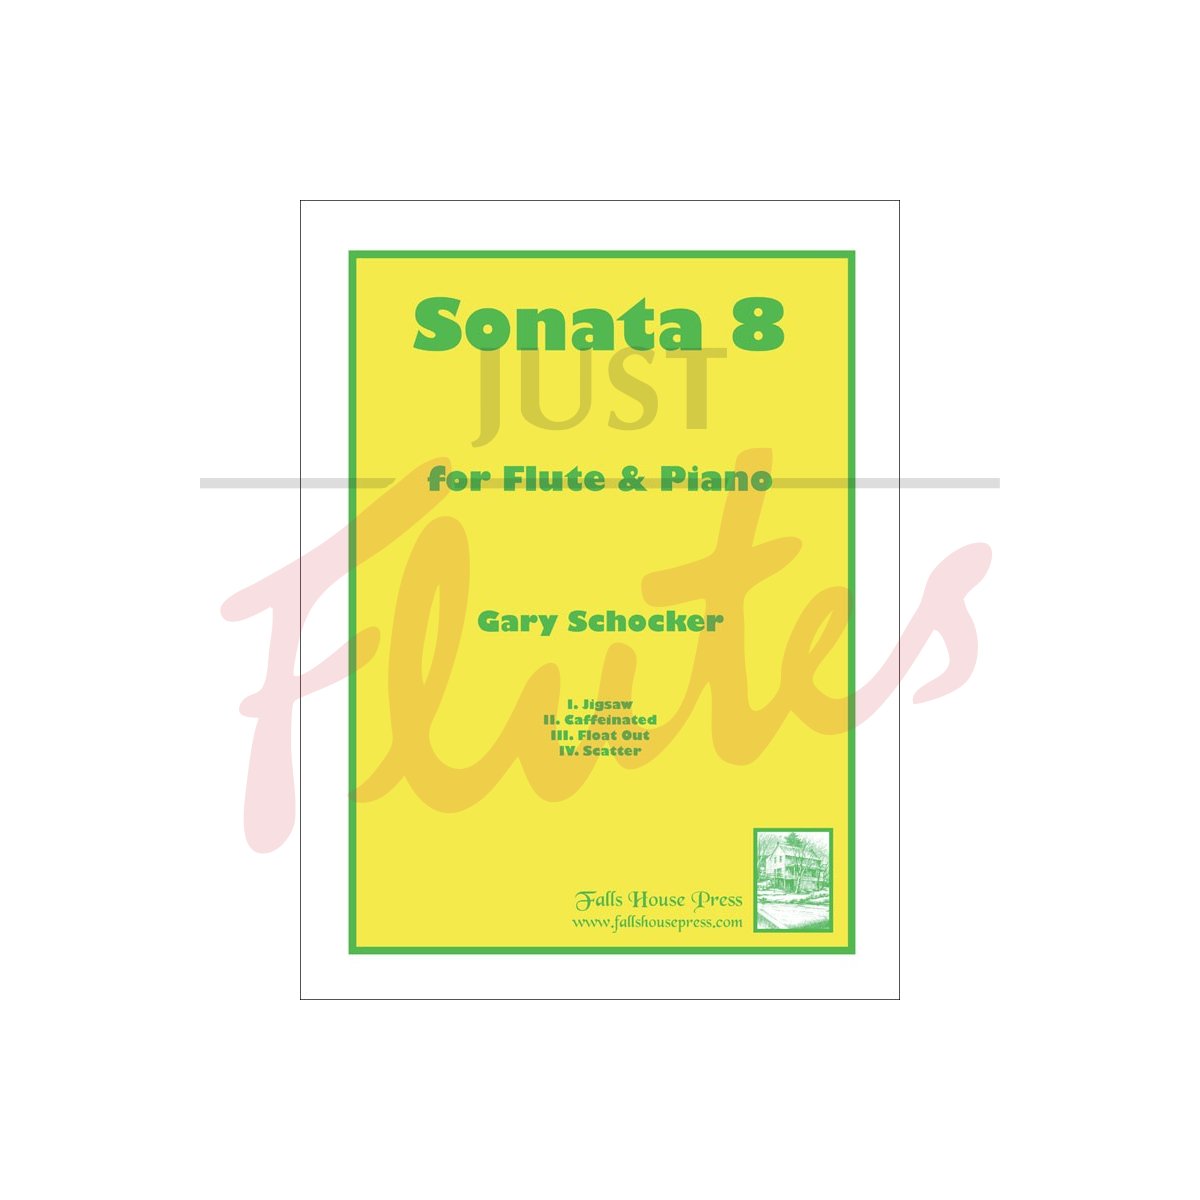 Sonata 8 for Flute and Piano